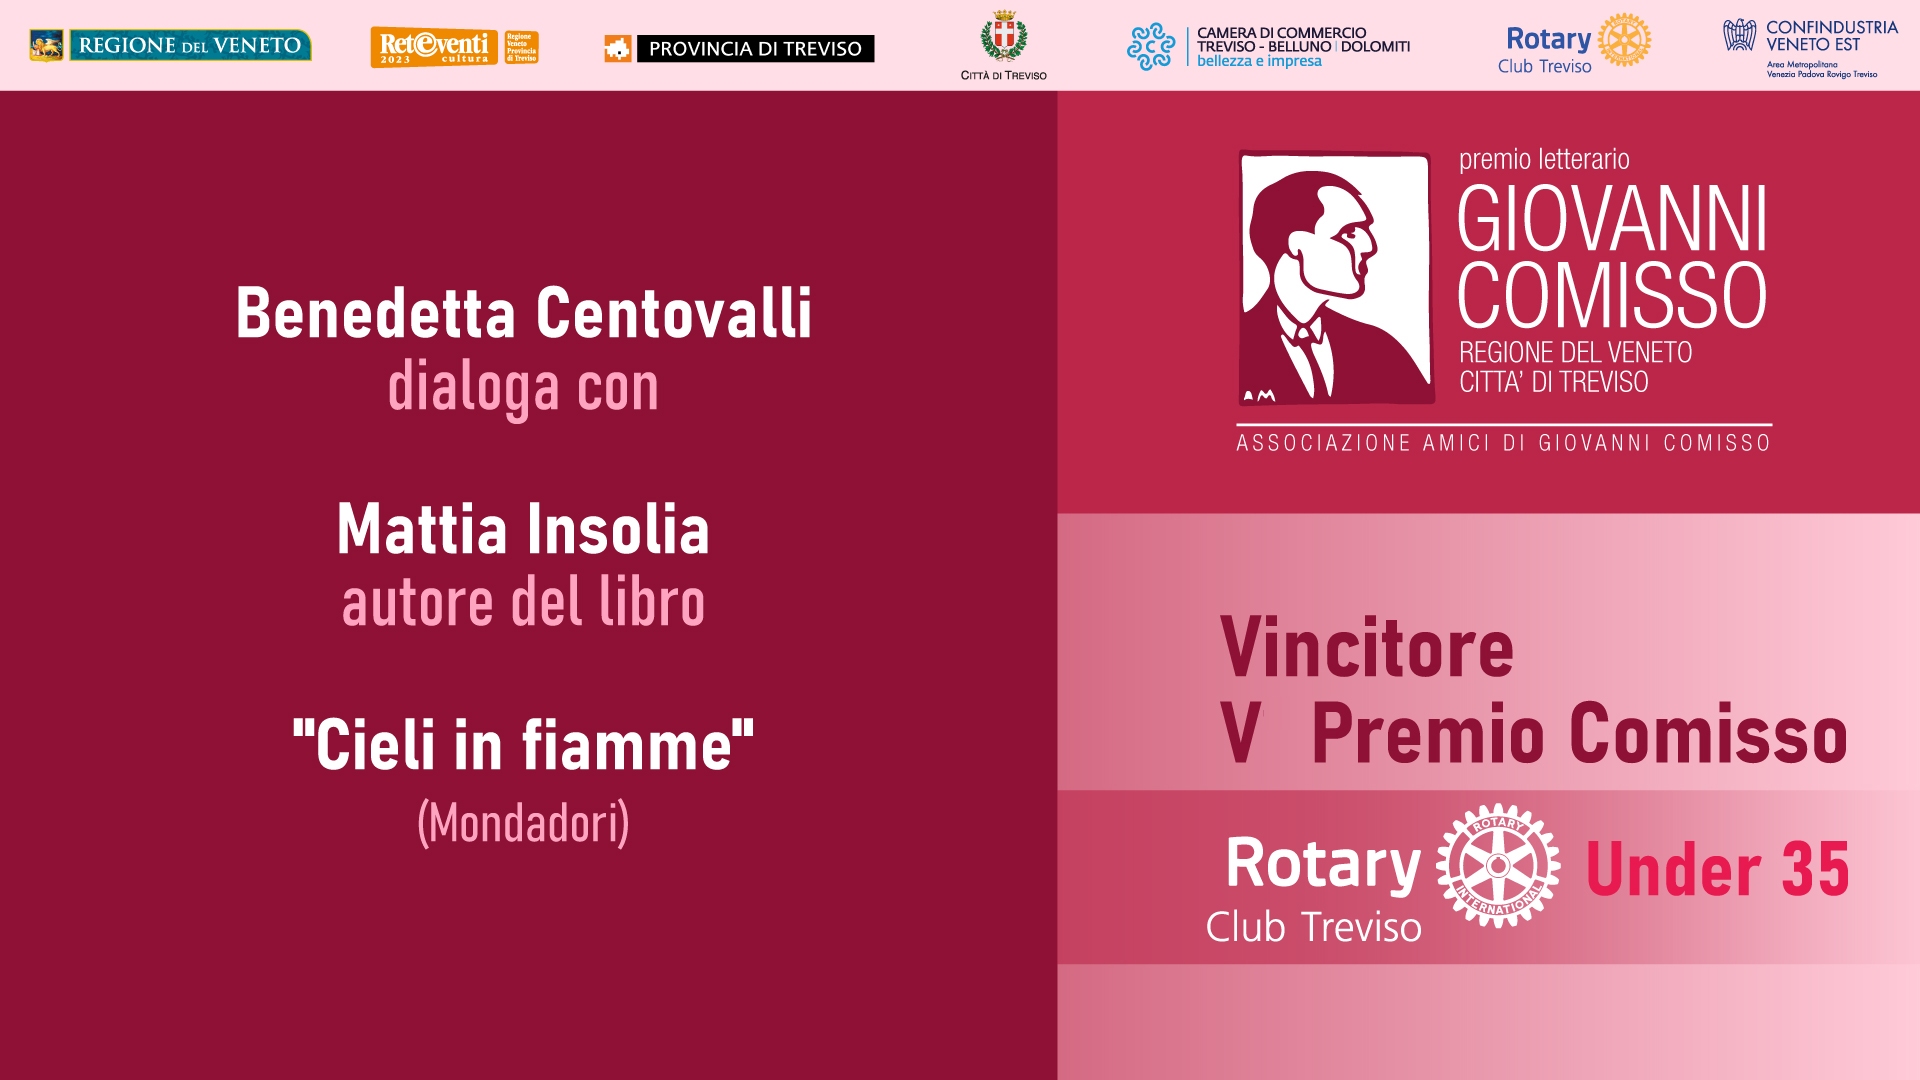 5° Premio Comisso Rotary Club Treviso Under 35. Benedetta Centovalli dialoga con Mattia Insolia